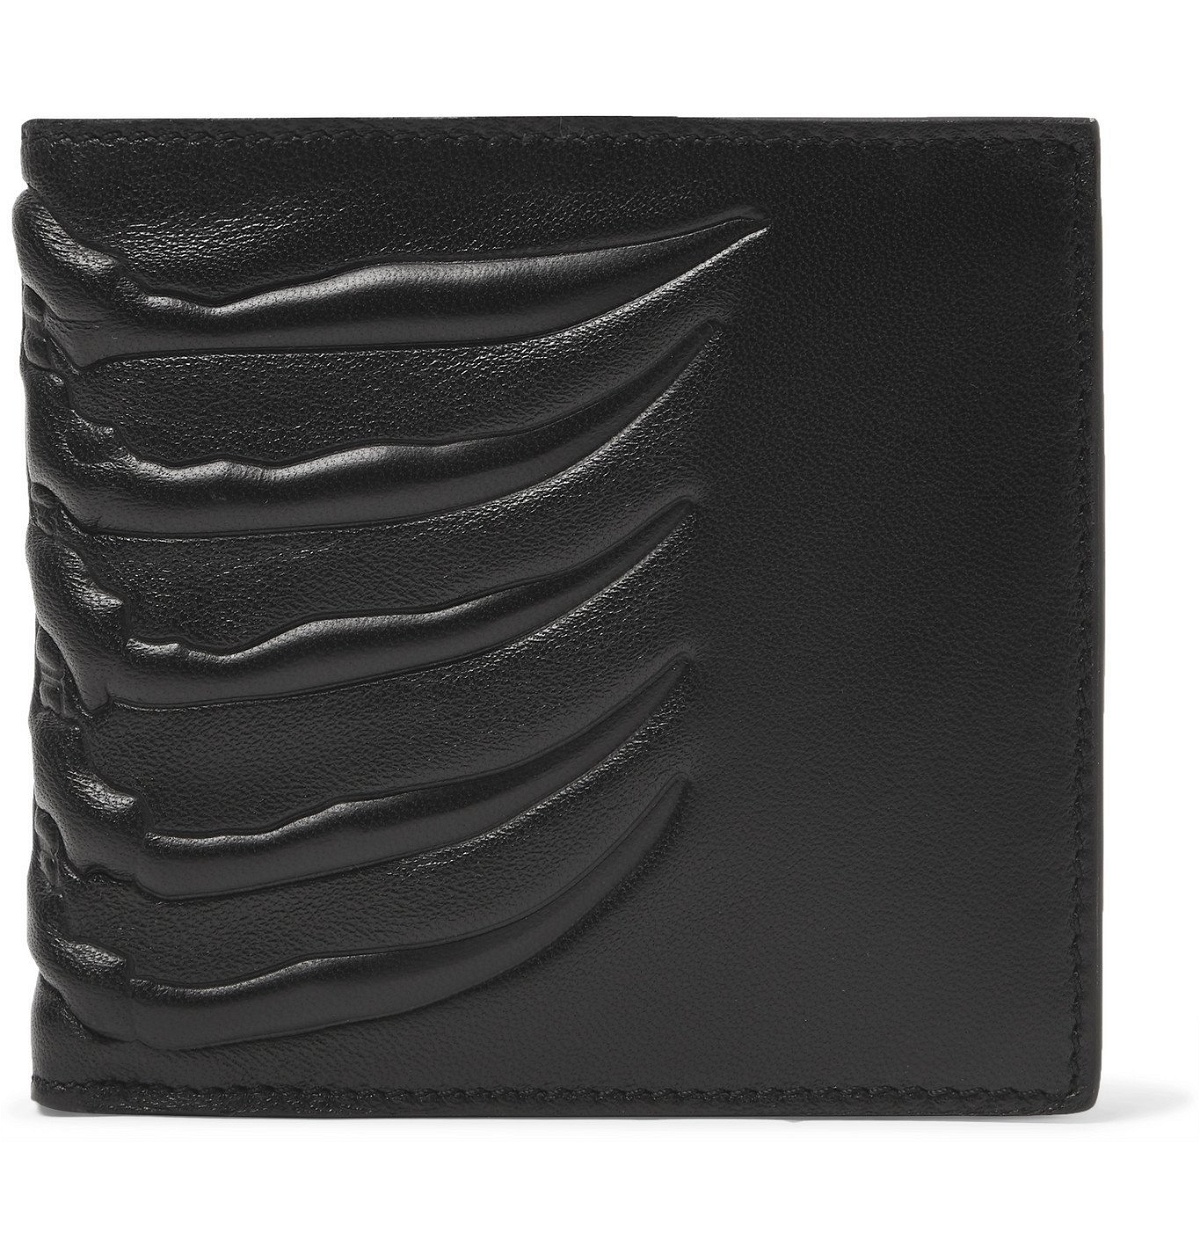 Alexander McQueen - Embossed Leather Billfold Wallet - Black Alexander ...